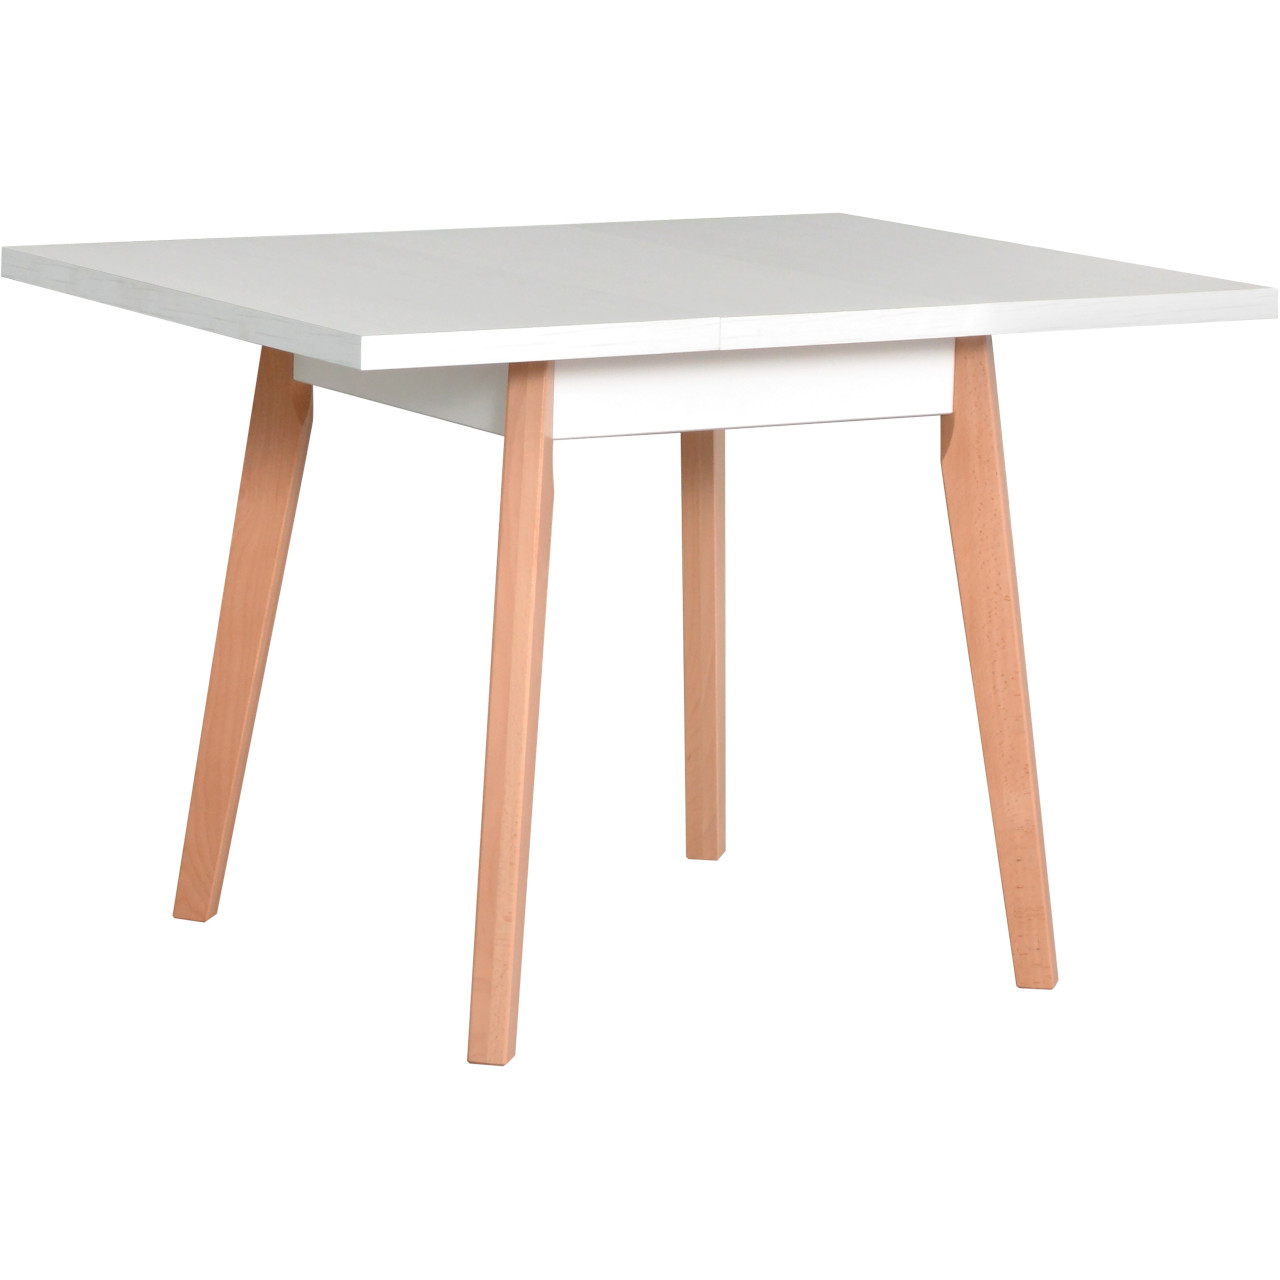 Tisch OSLO 1 L 80x80/110 weiß laminat / buche natur